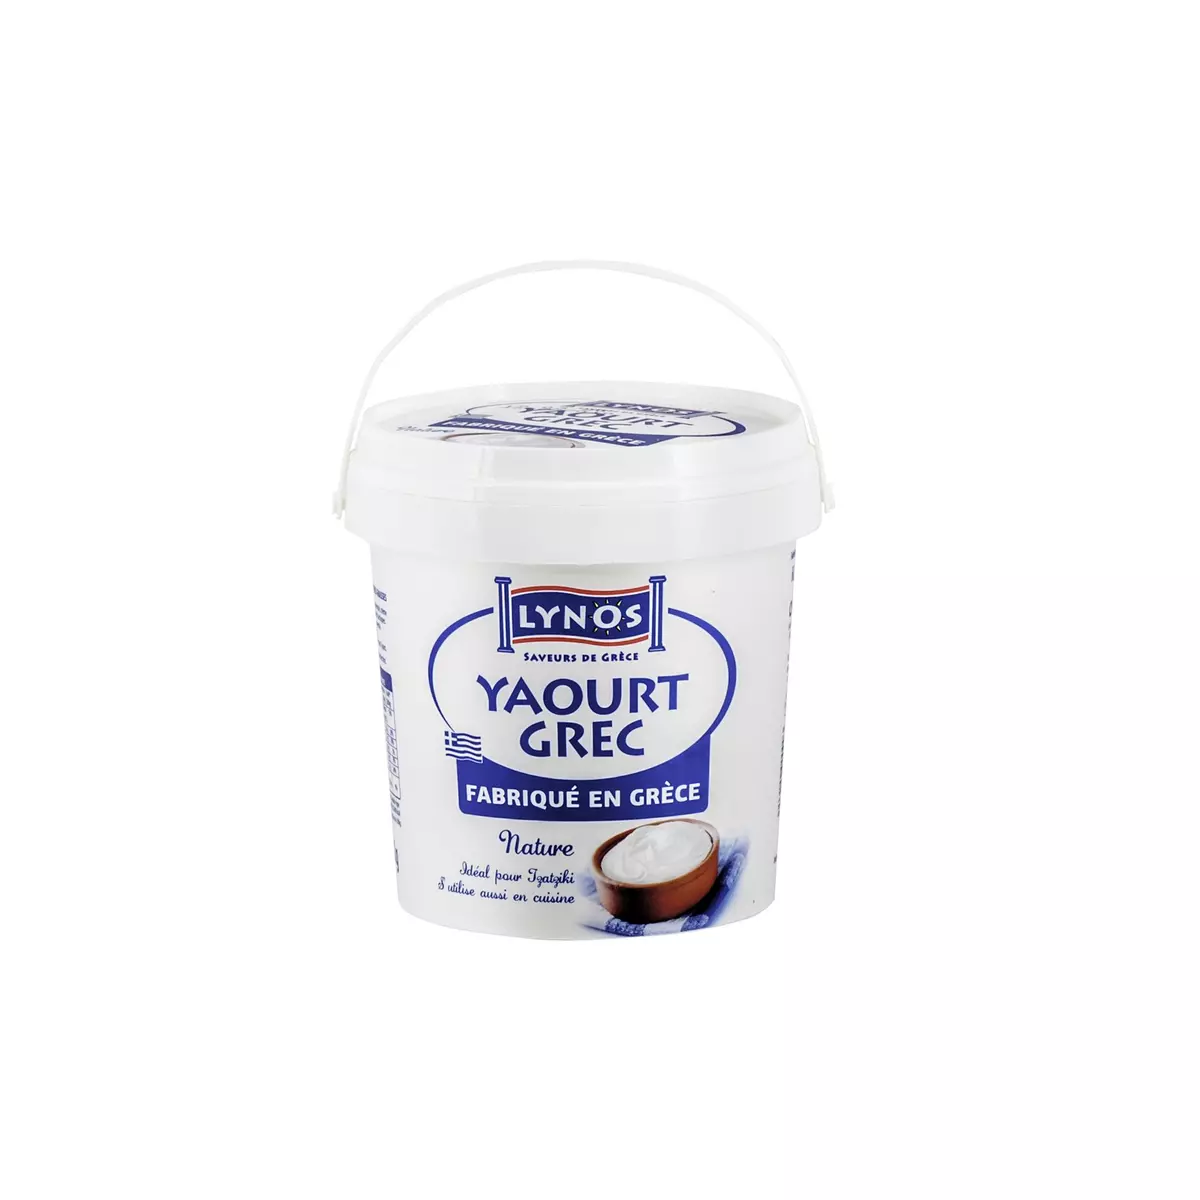 LYNOS Yaourt grec au lait de vache nature 1kg